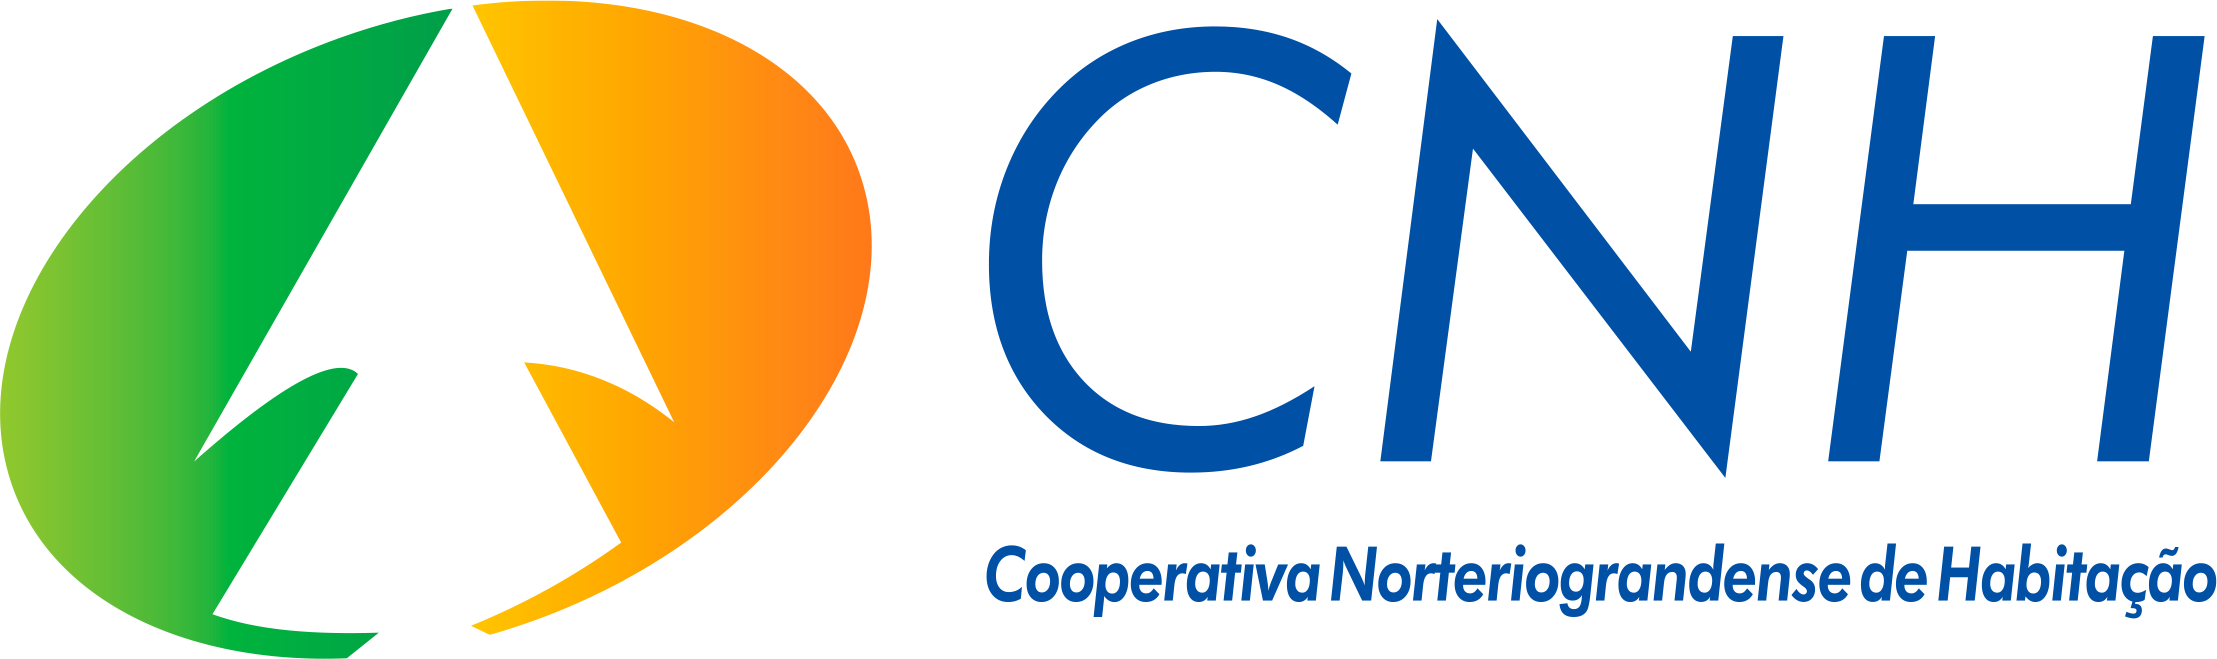 CNH – Cooperativa Norteriograndense de Habitação Logo